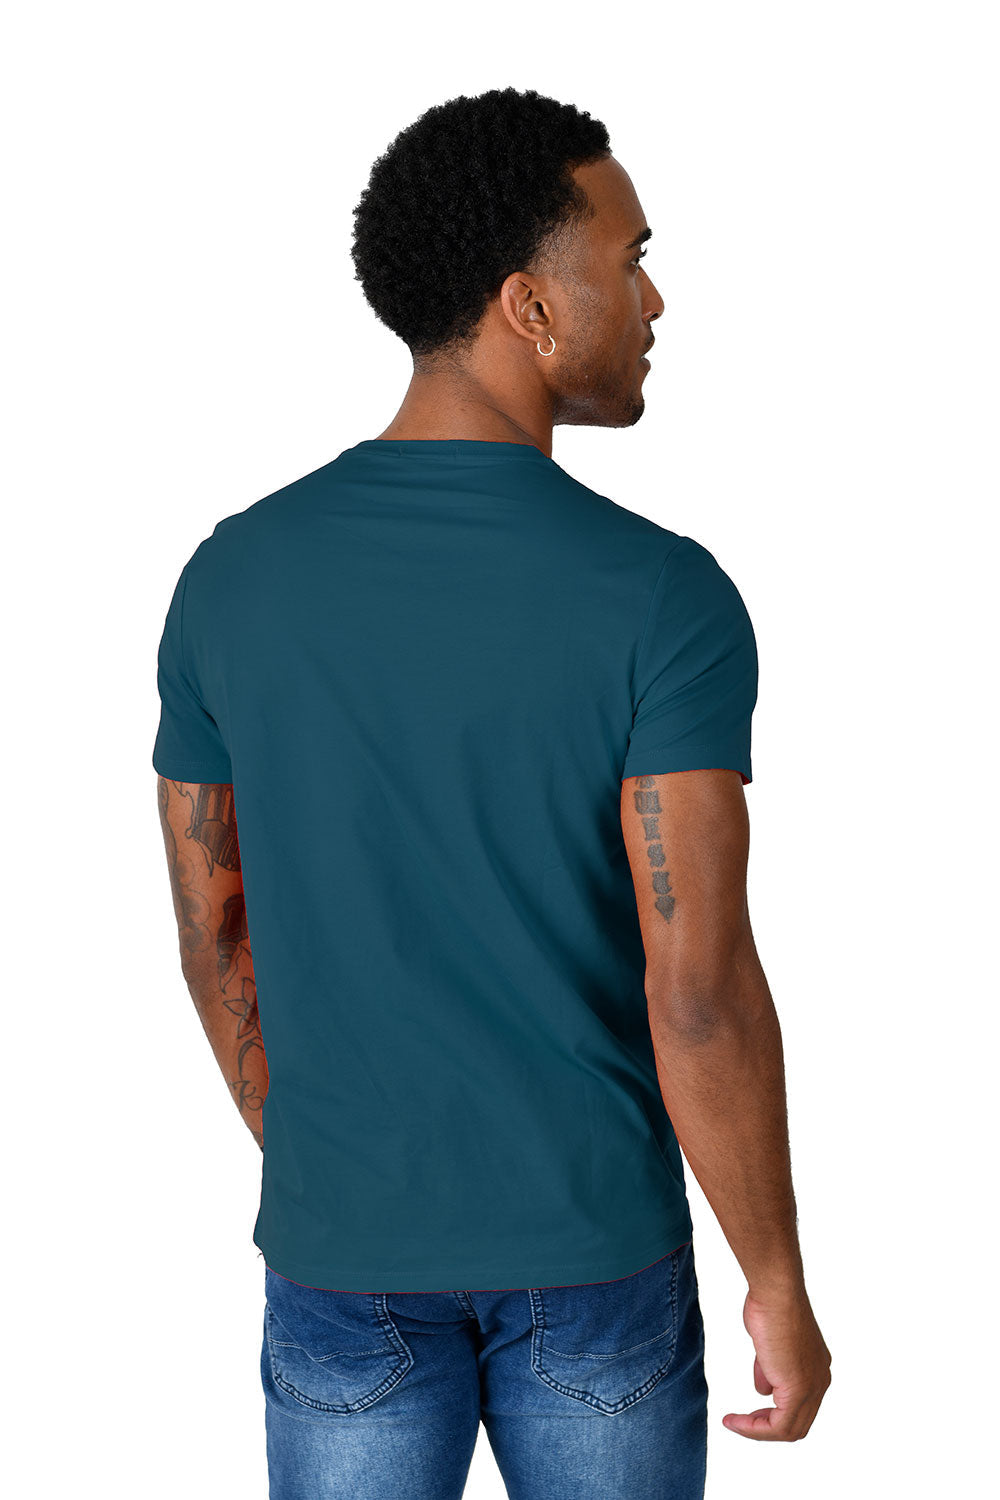 BARABAS Men's Basic Solid Color Crew-neck T-shirts ST933 teal